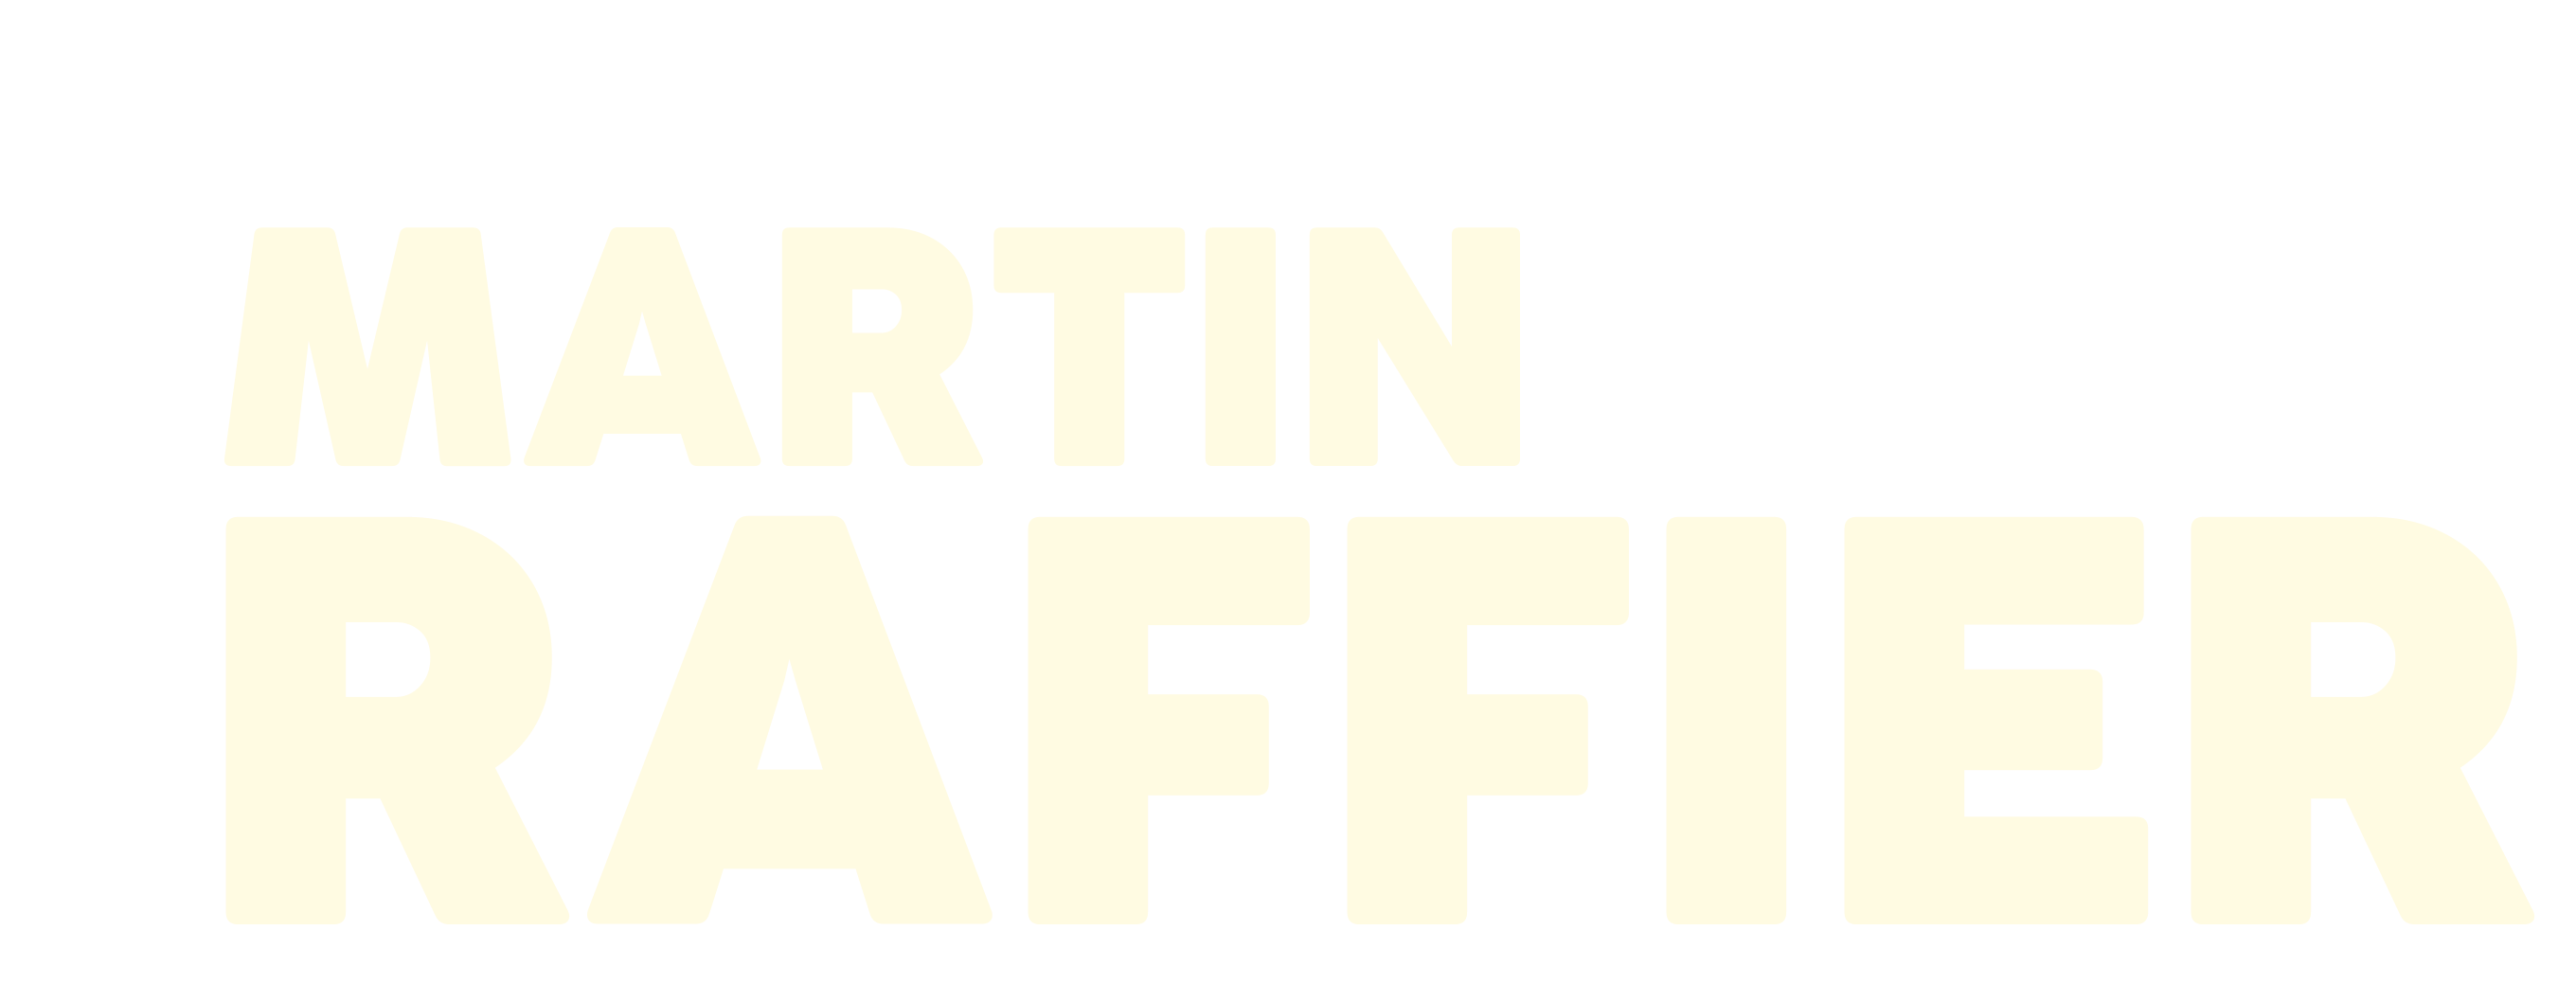 Martin Raffier MARTIN RAFFIER